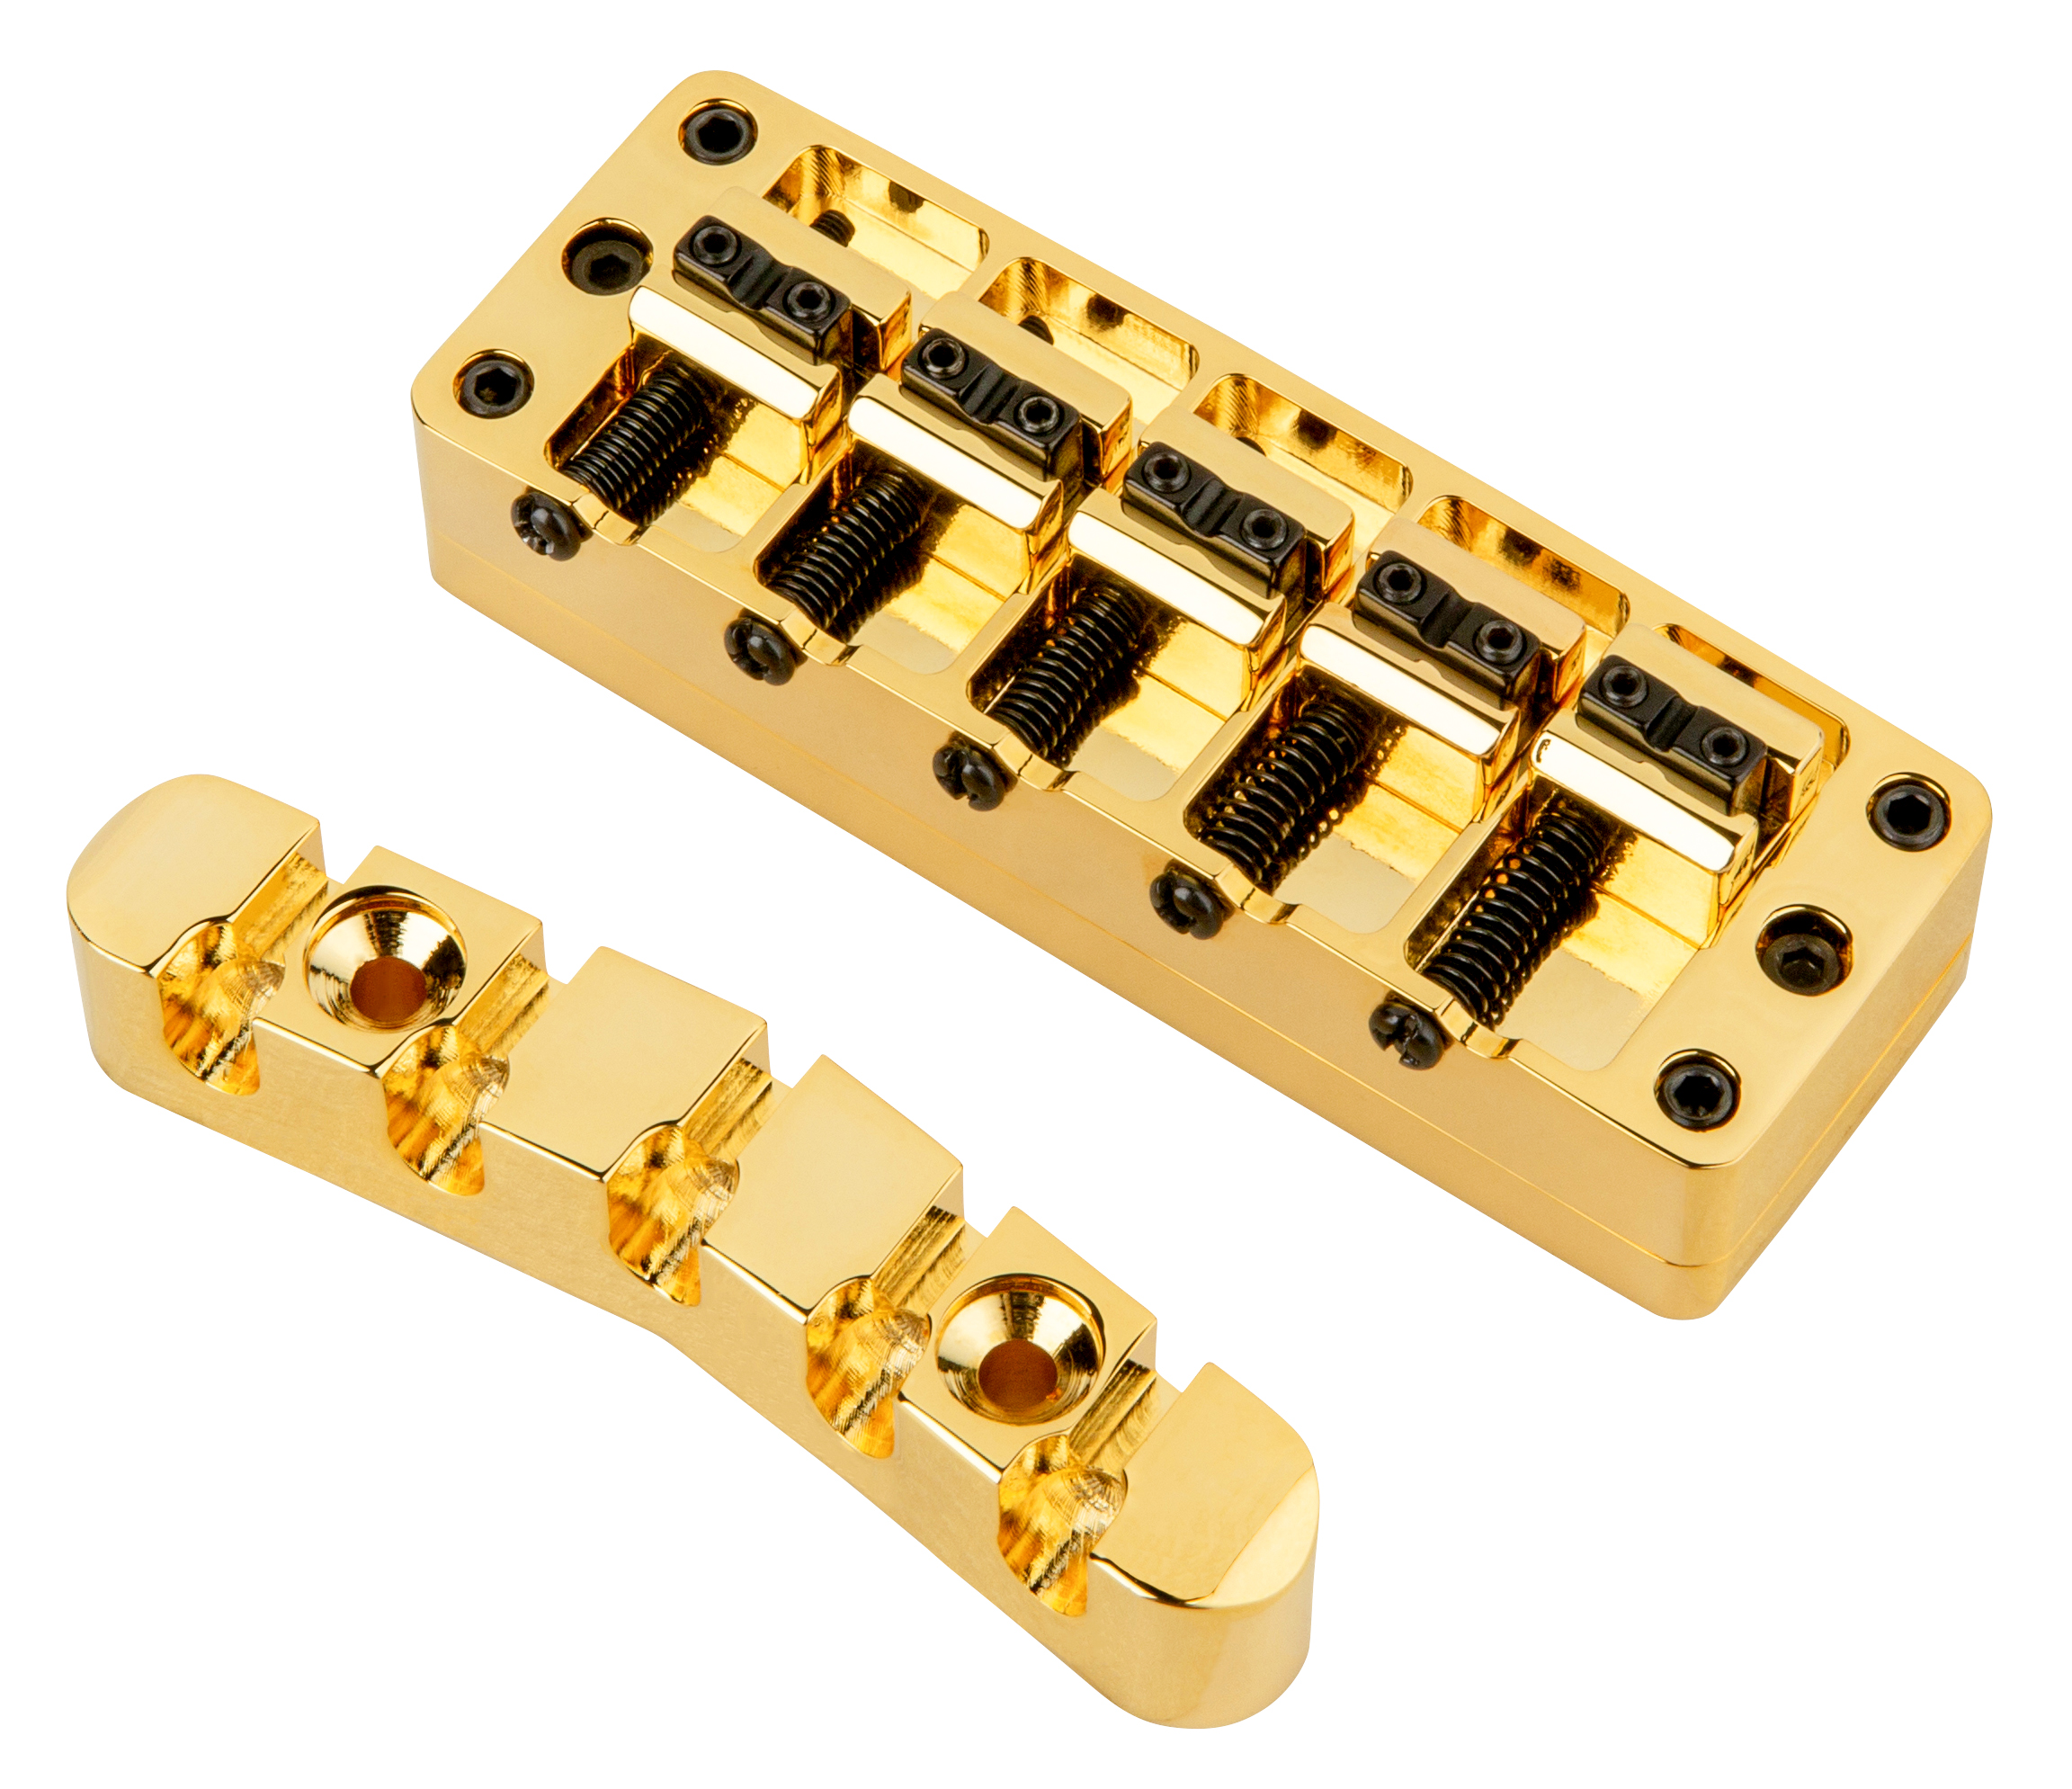 Warwick Parts - 2-Piece 3D Bridge & Tailpiece, 5-String, Brass - Gold